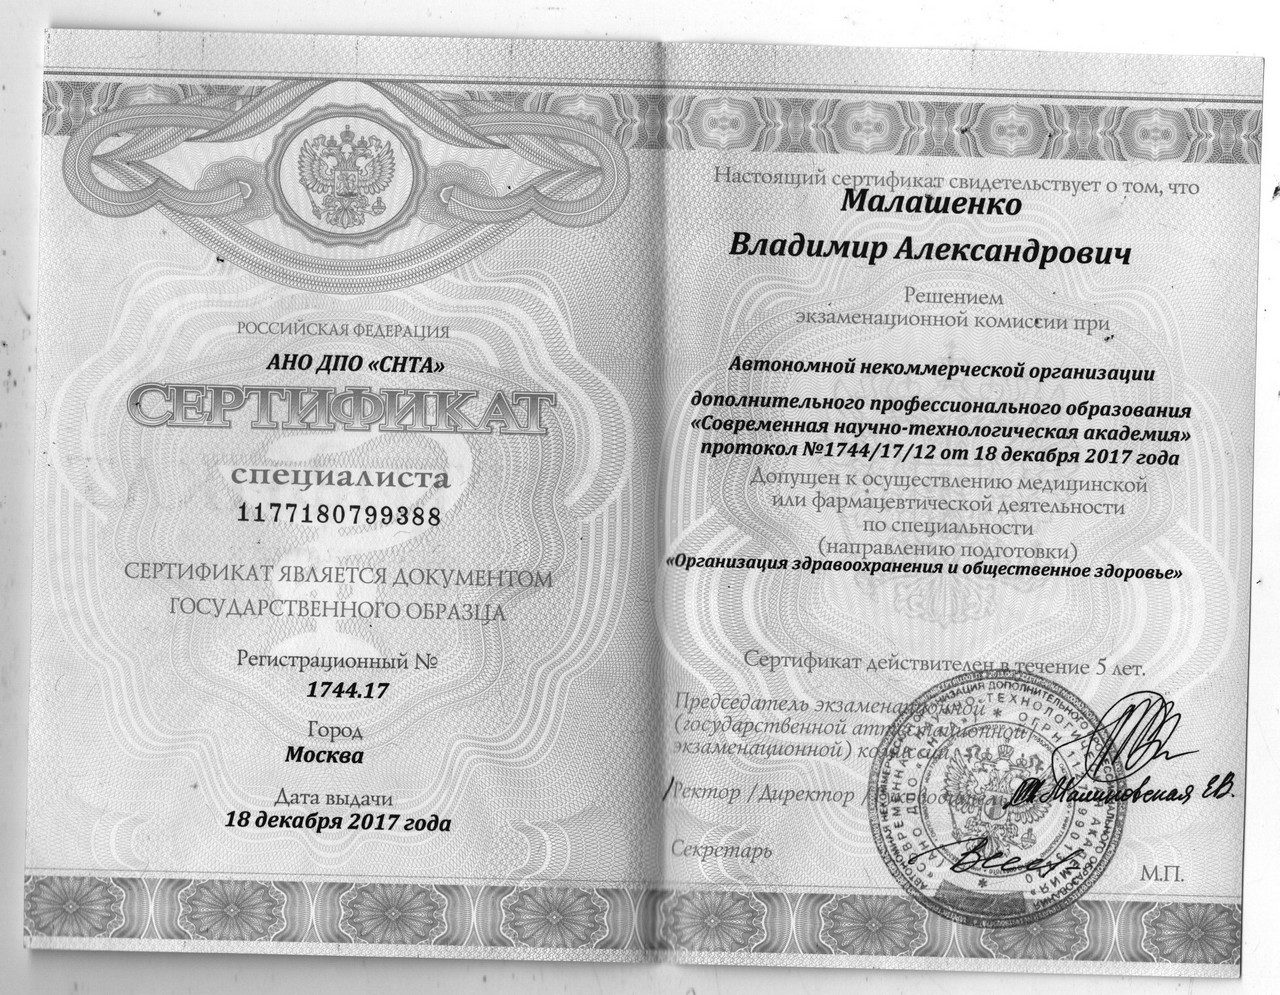 Сертификат специалиста Удостоверение о повышении квалификации Малашенко Владимир Александрович